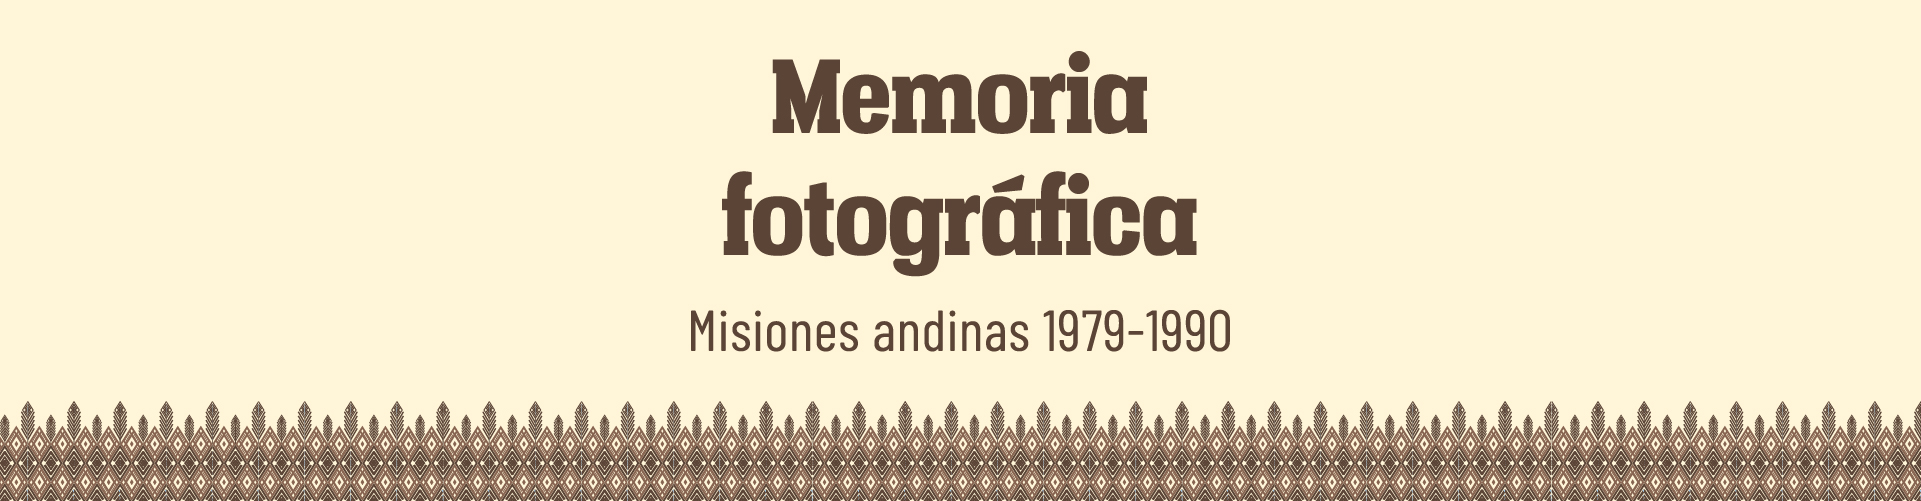 Portada del Libro Memoria fotografica. Misiones andinas 1979-1990